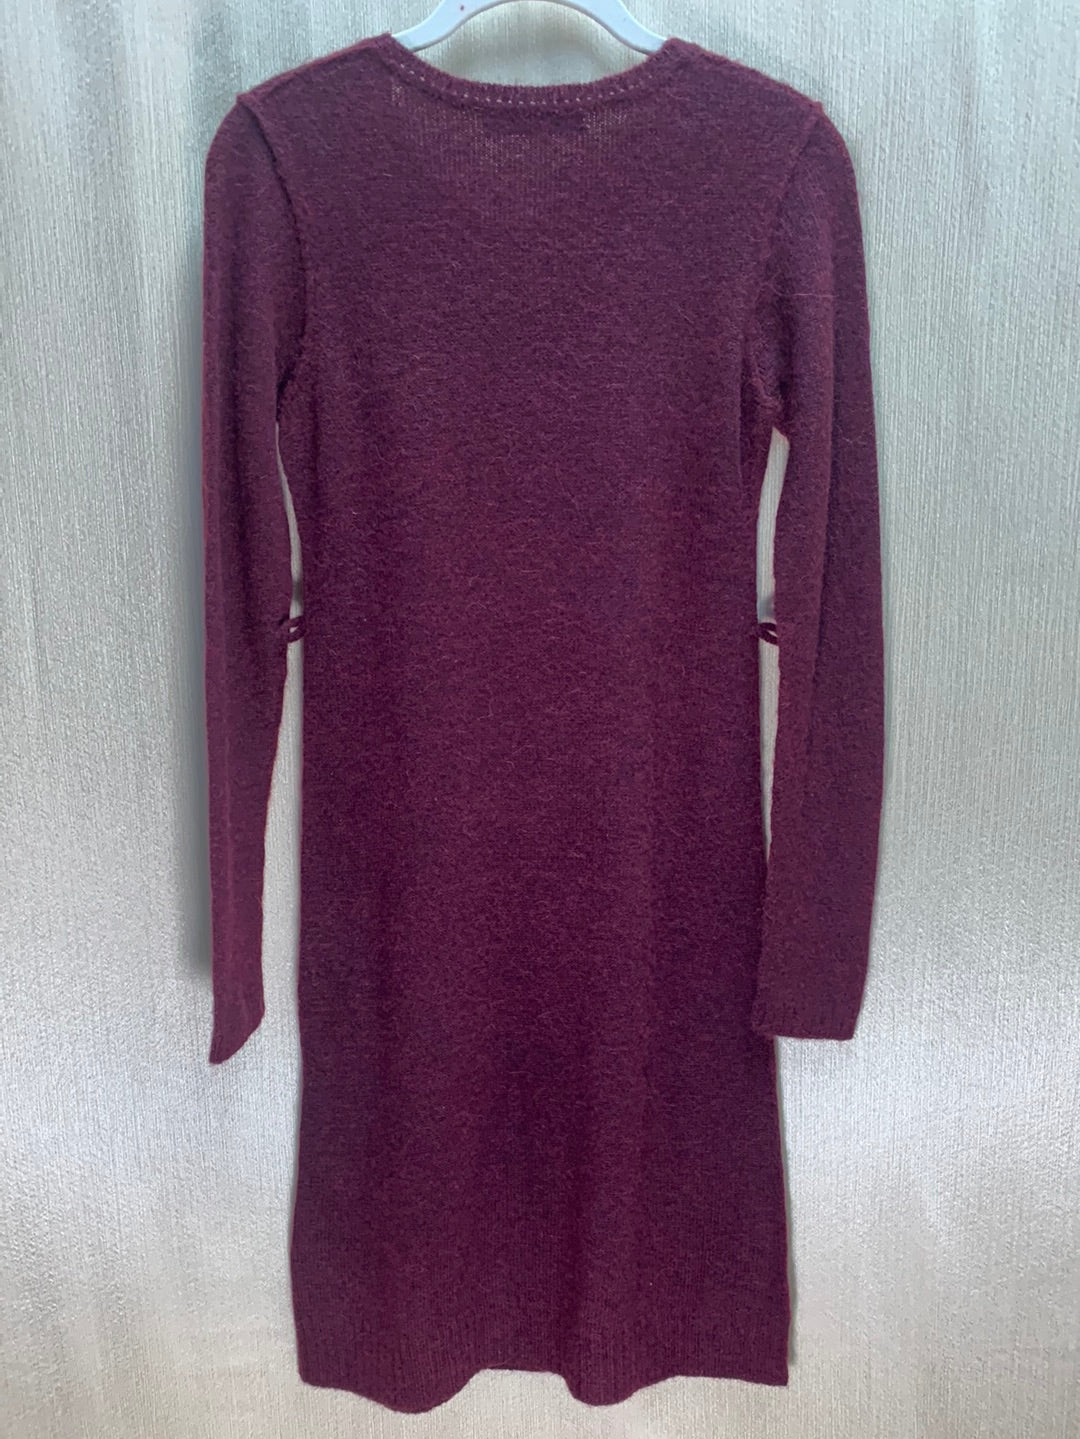 PERUVIAN CONNECTION burgundy Alpaca Blend Long Sleeve Dress - XS